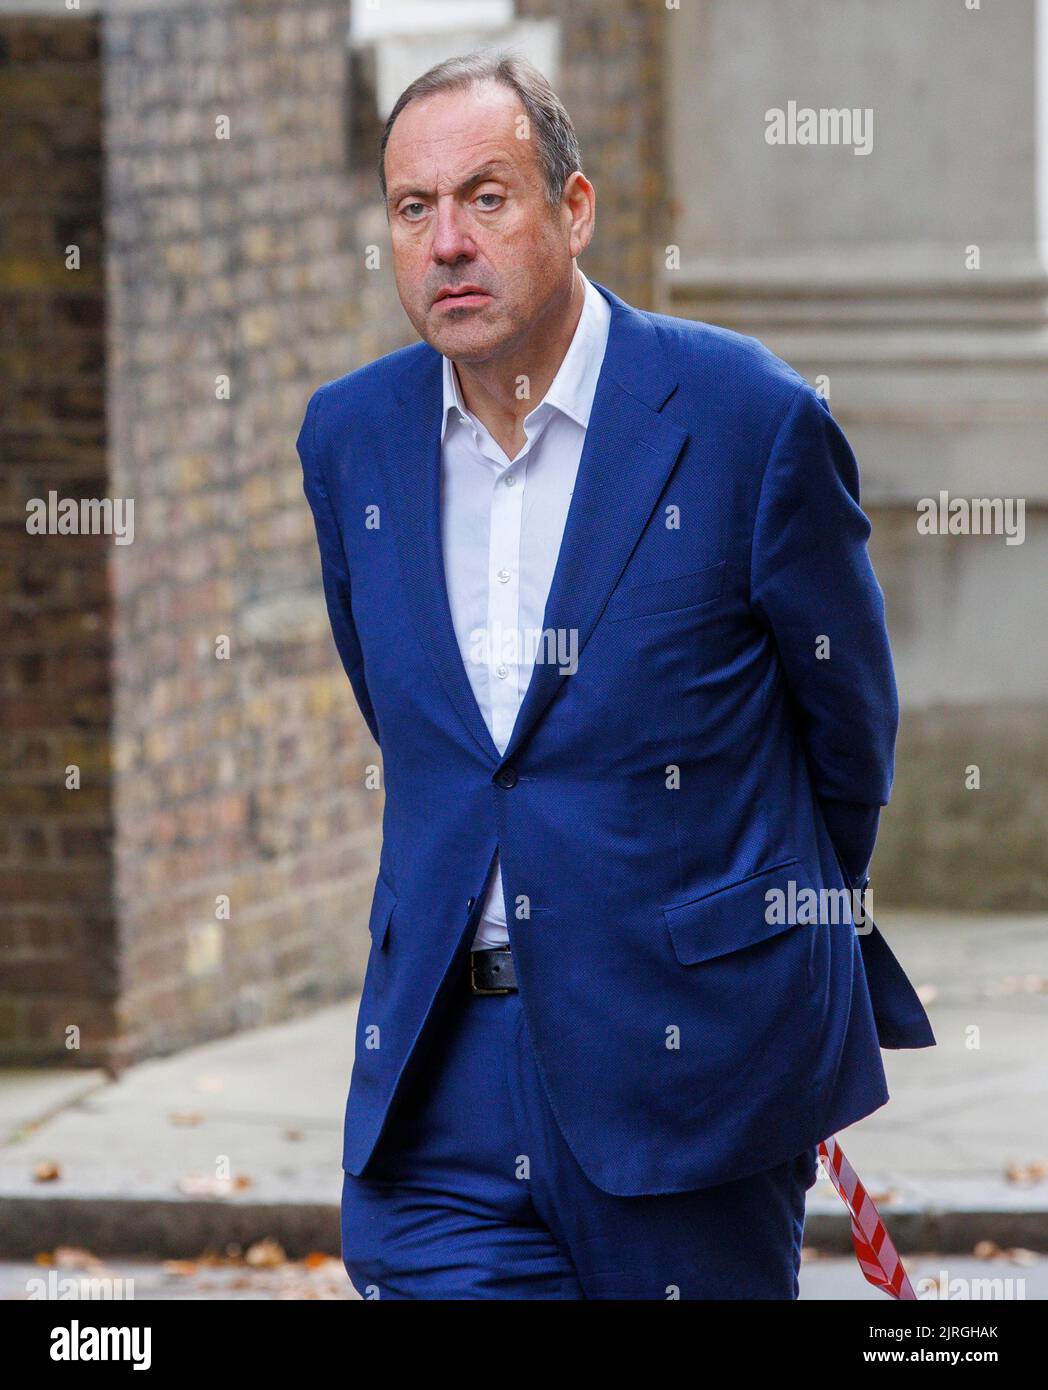 El barón Harrington de Watford, Ministro de Estado para los Refugiados, llega a Downing Street. Foto de stock